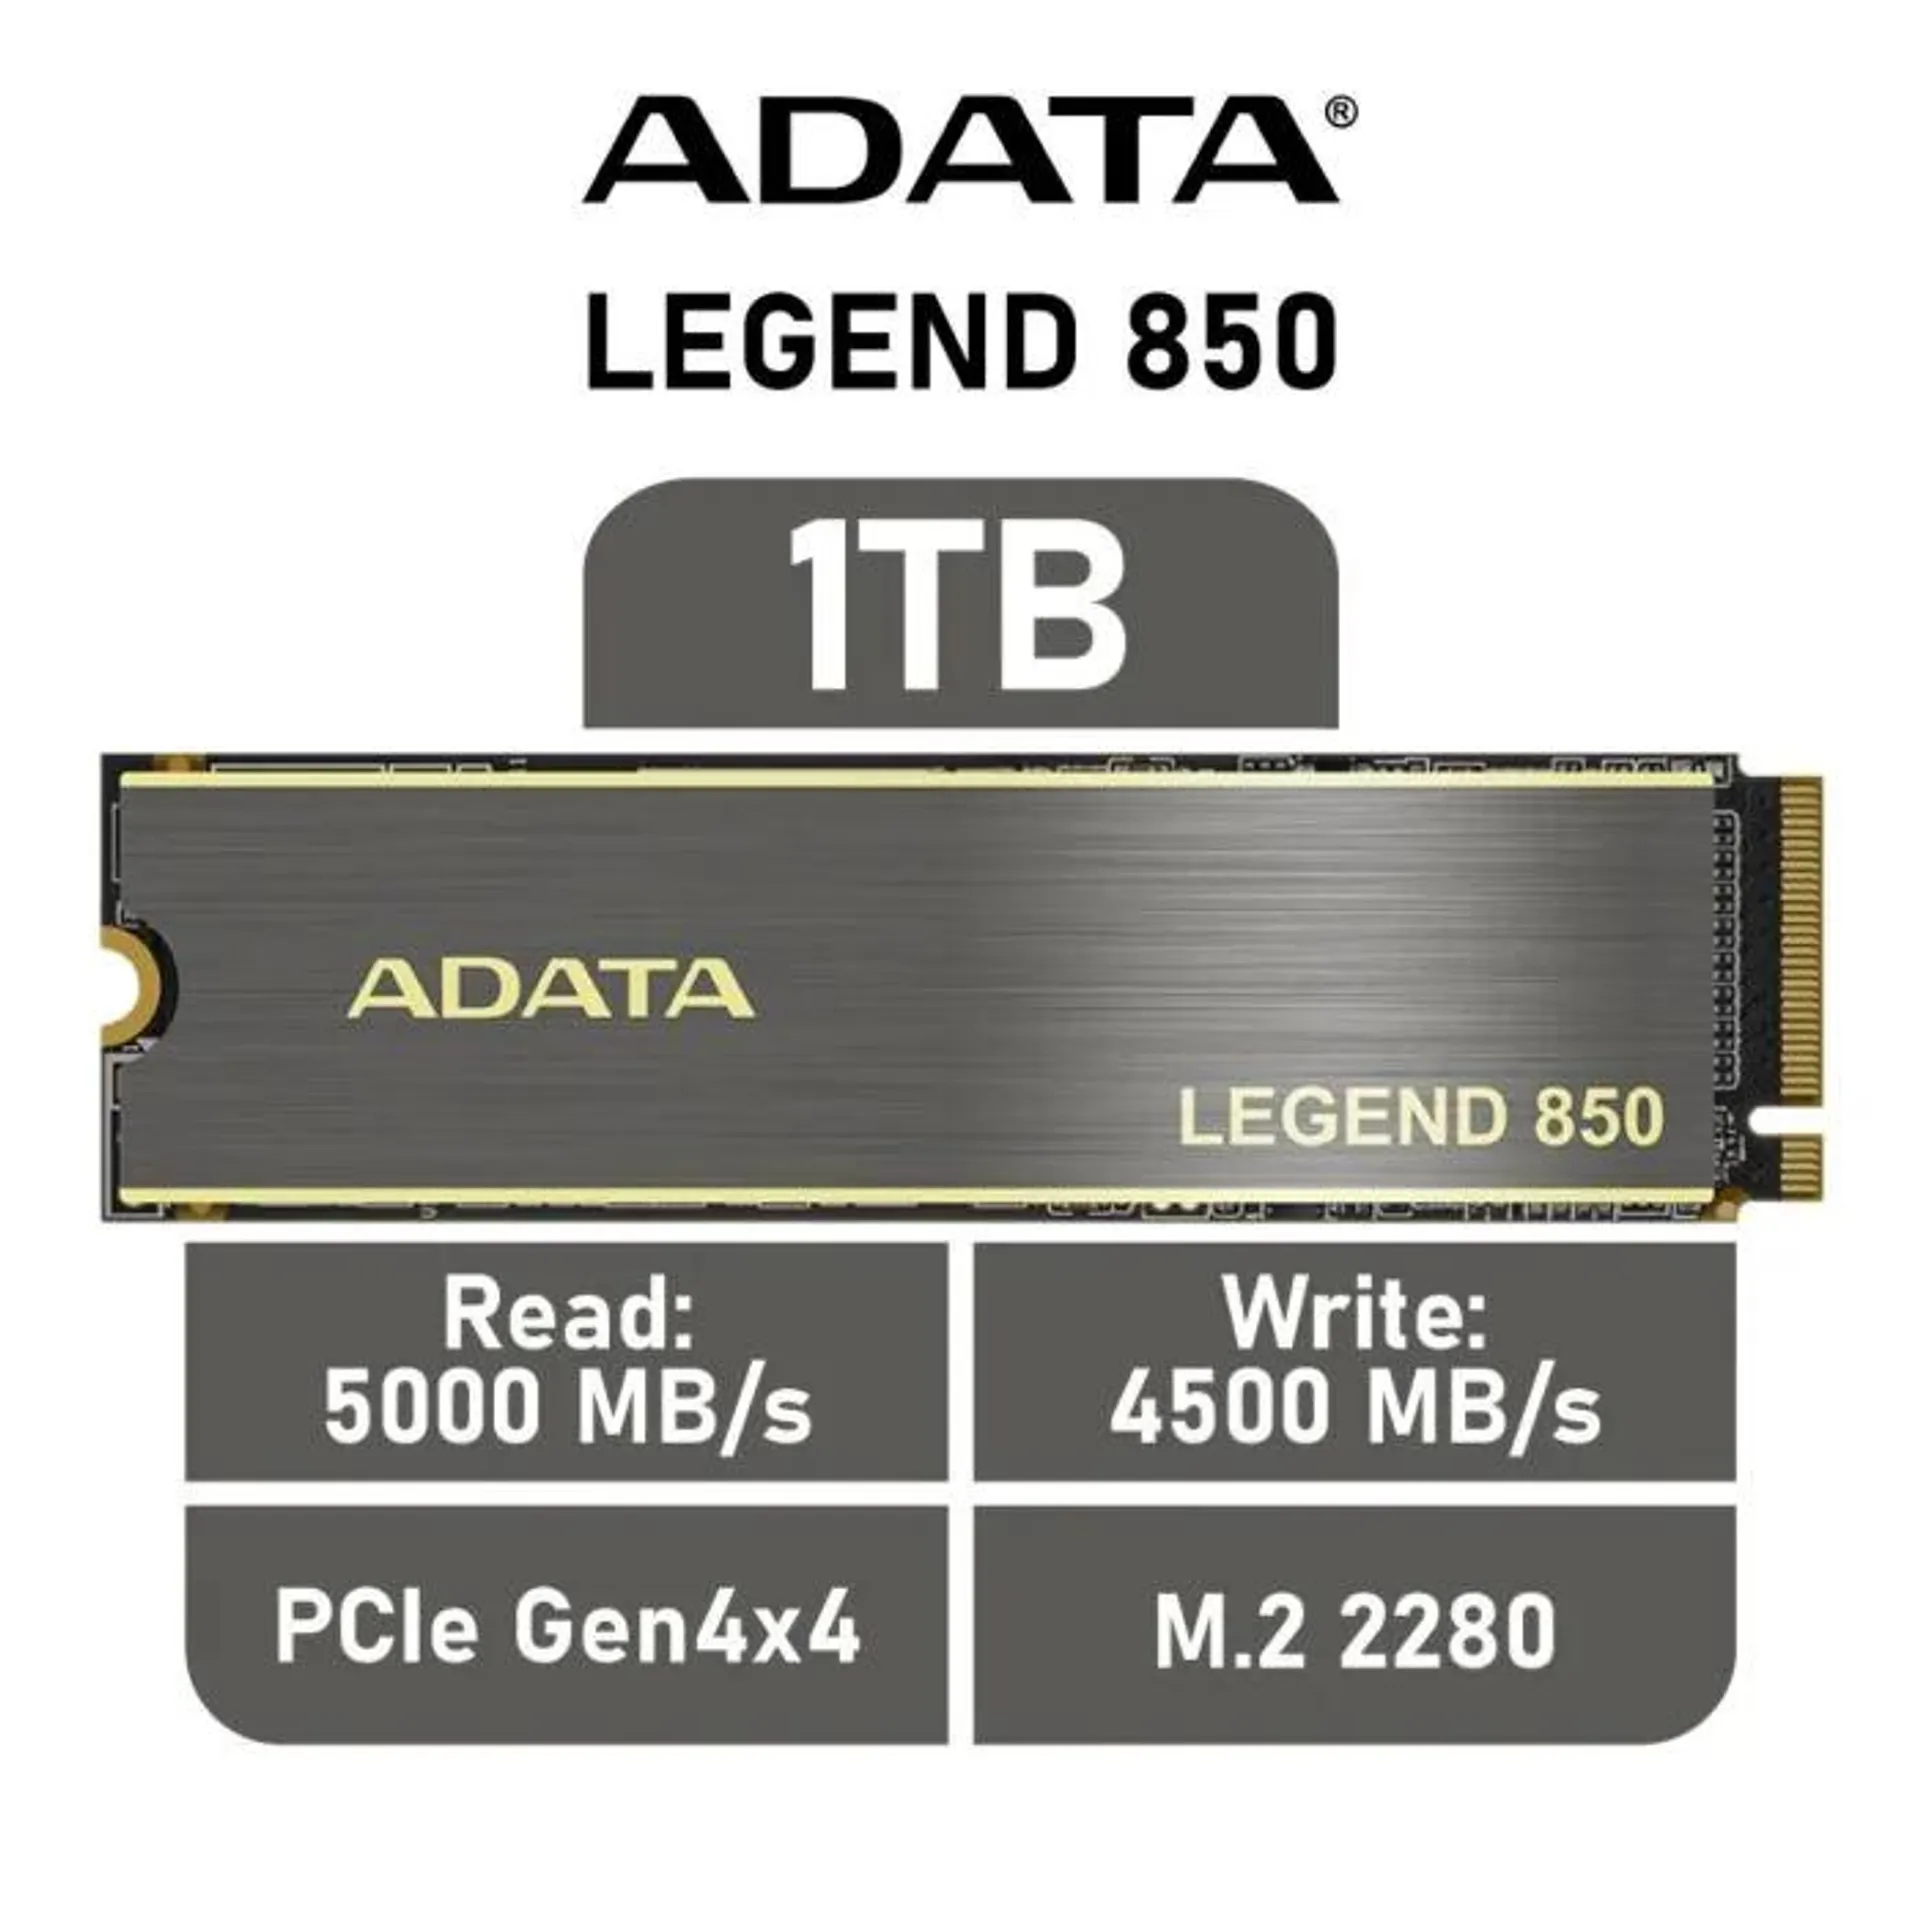 ADATA LEGEND 850 1TB PCIe Gen4x4 ALEG-850-1TCS M.2 2280 Solid State Drive